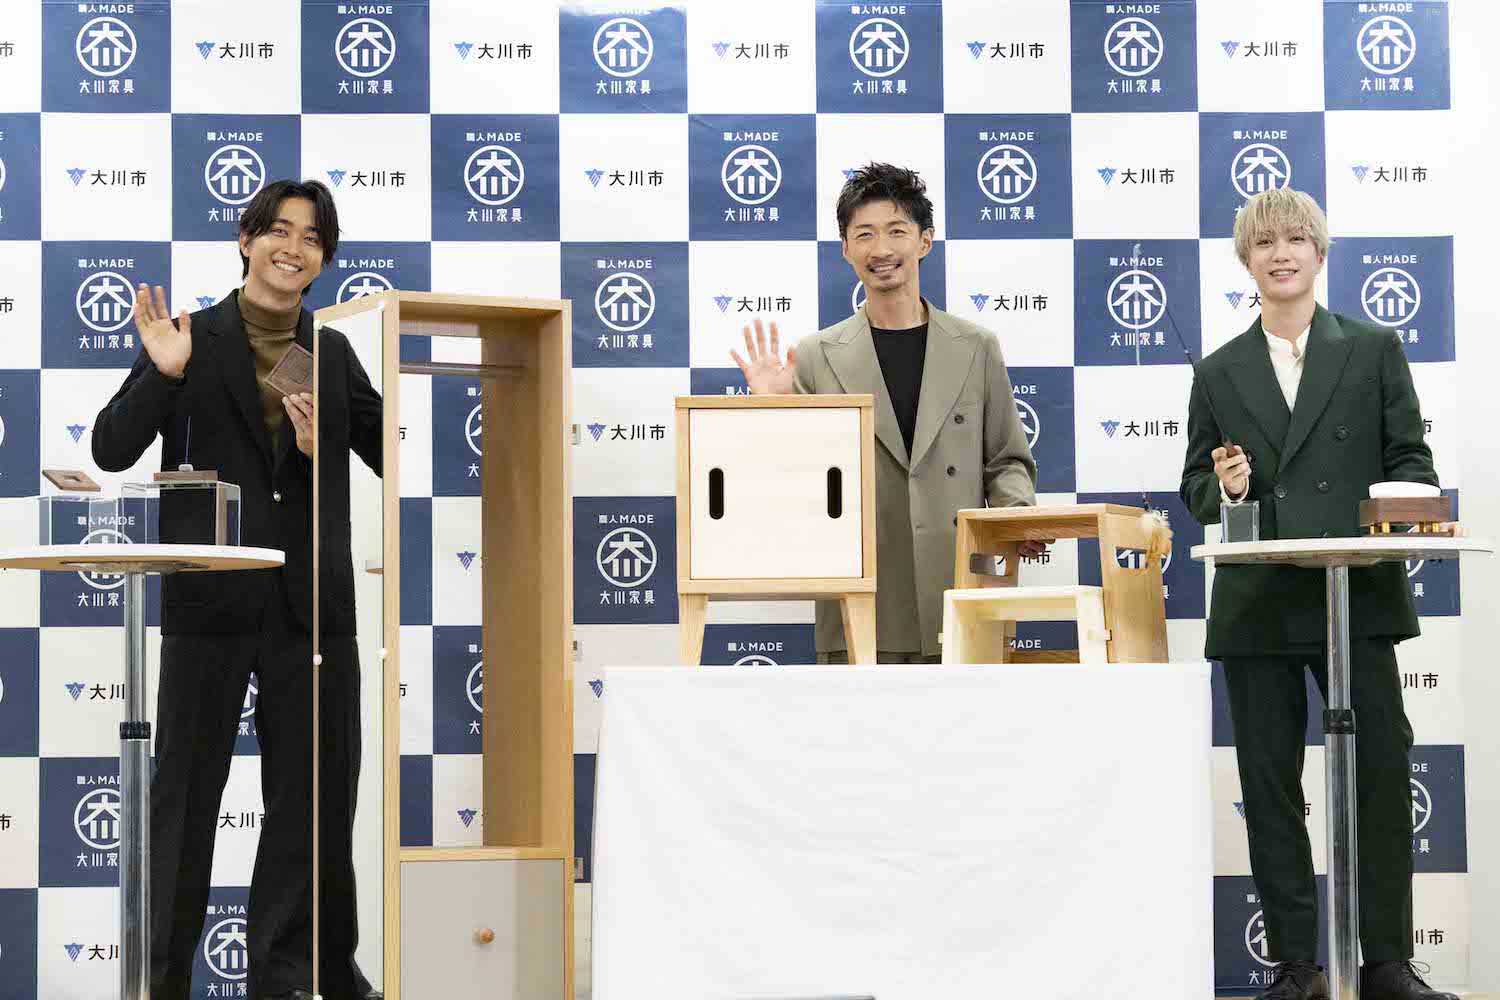 佐藤寛太、EXILE MAKIDAI、藤原樹、それぞれプロデュースしたアイテムを前に撮影